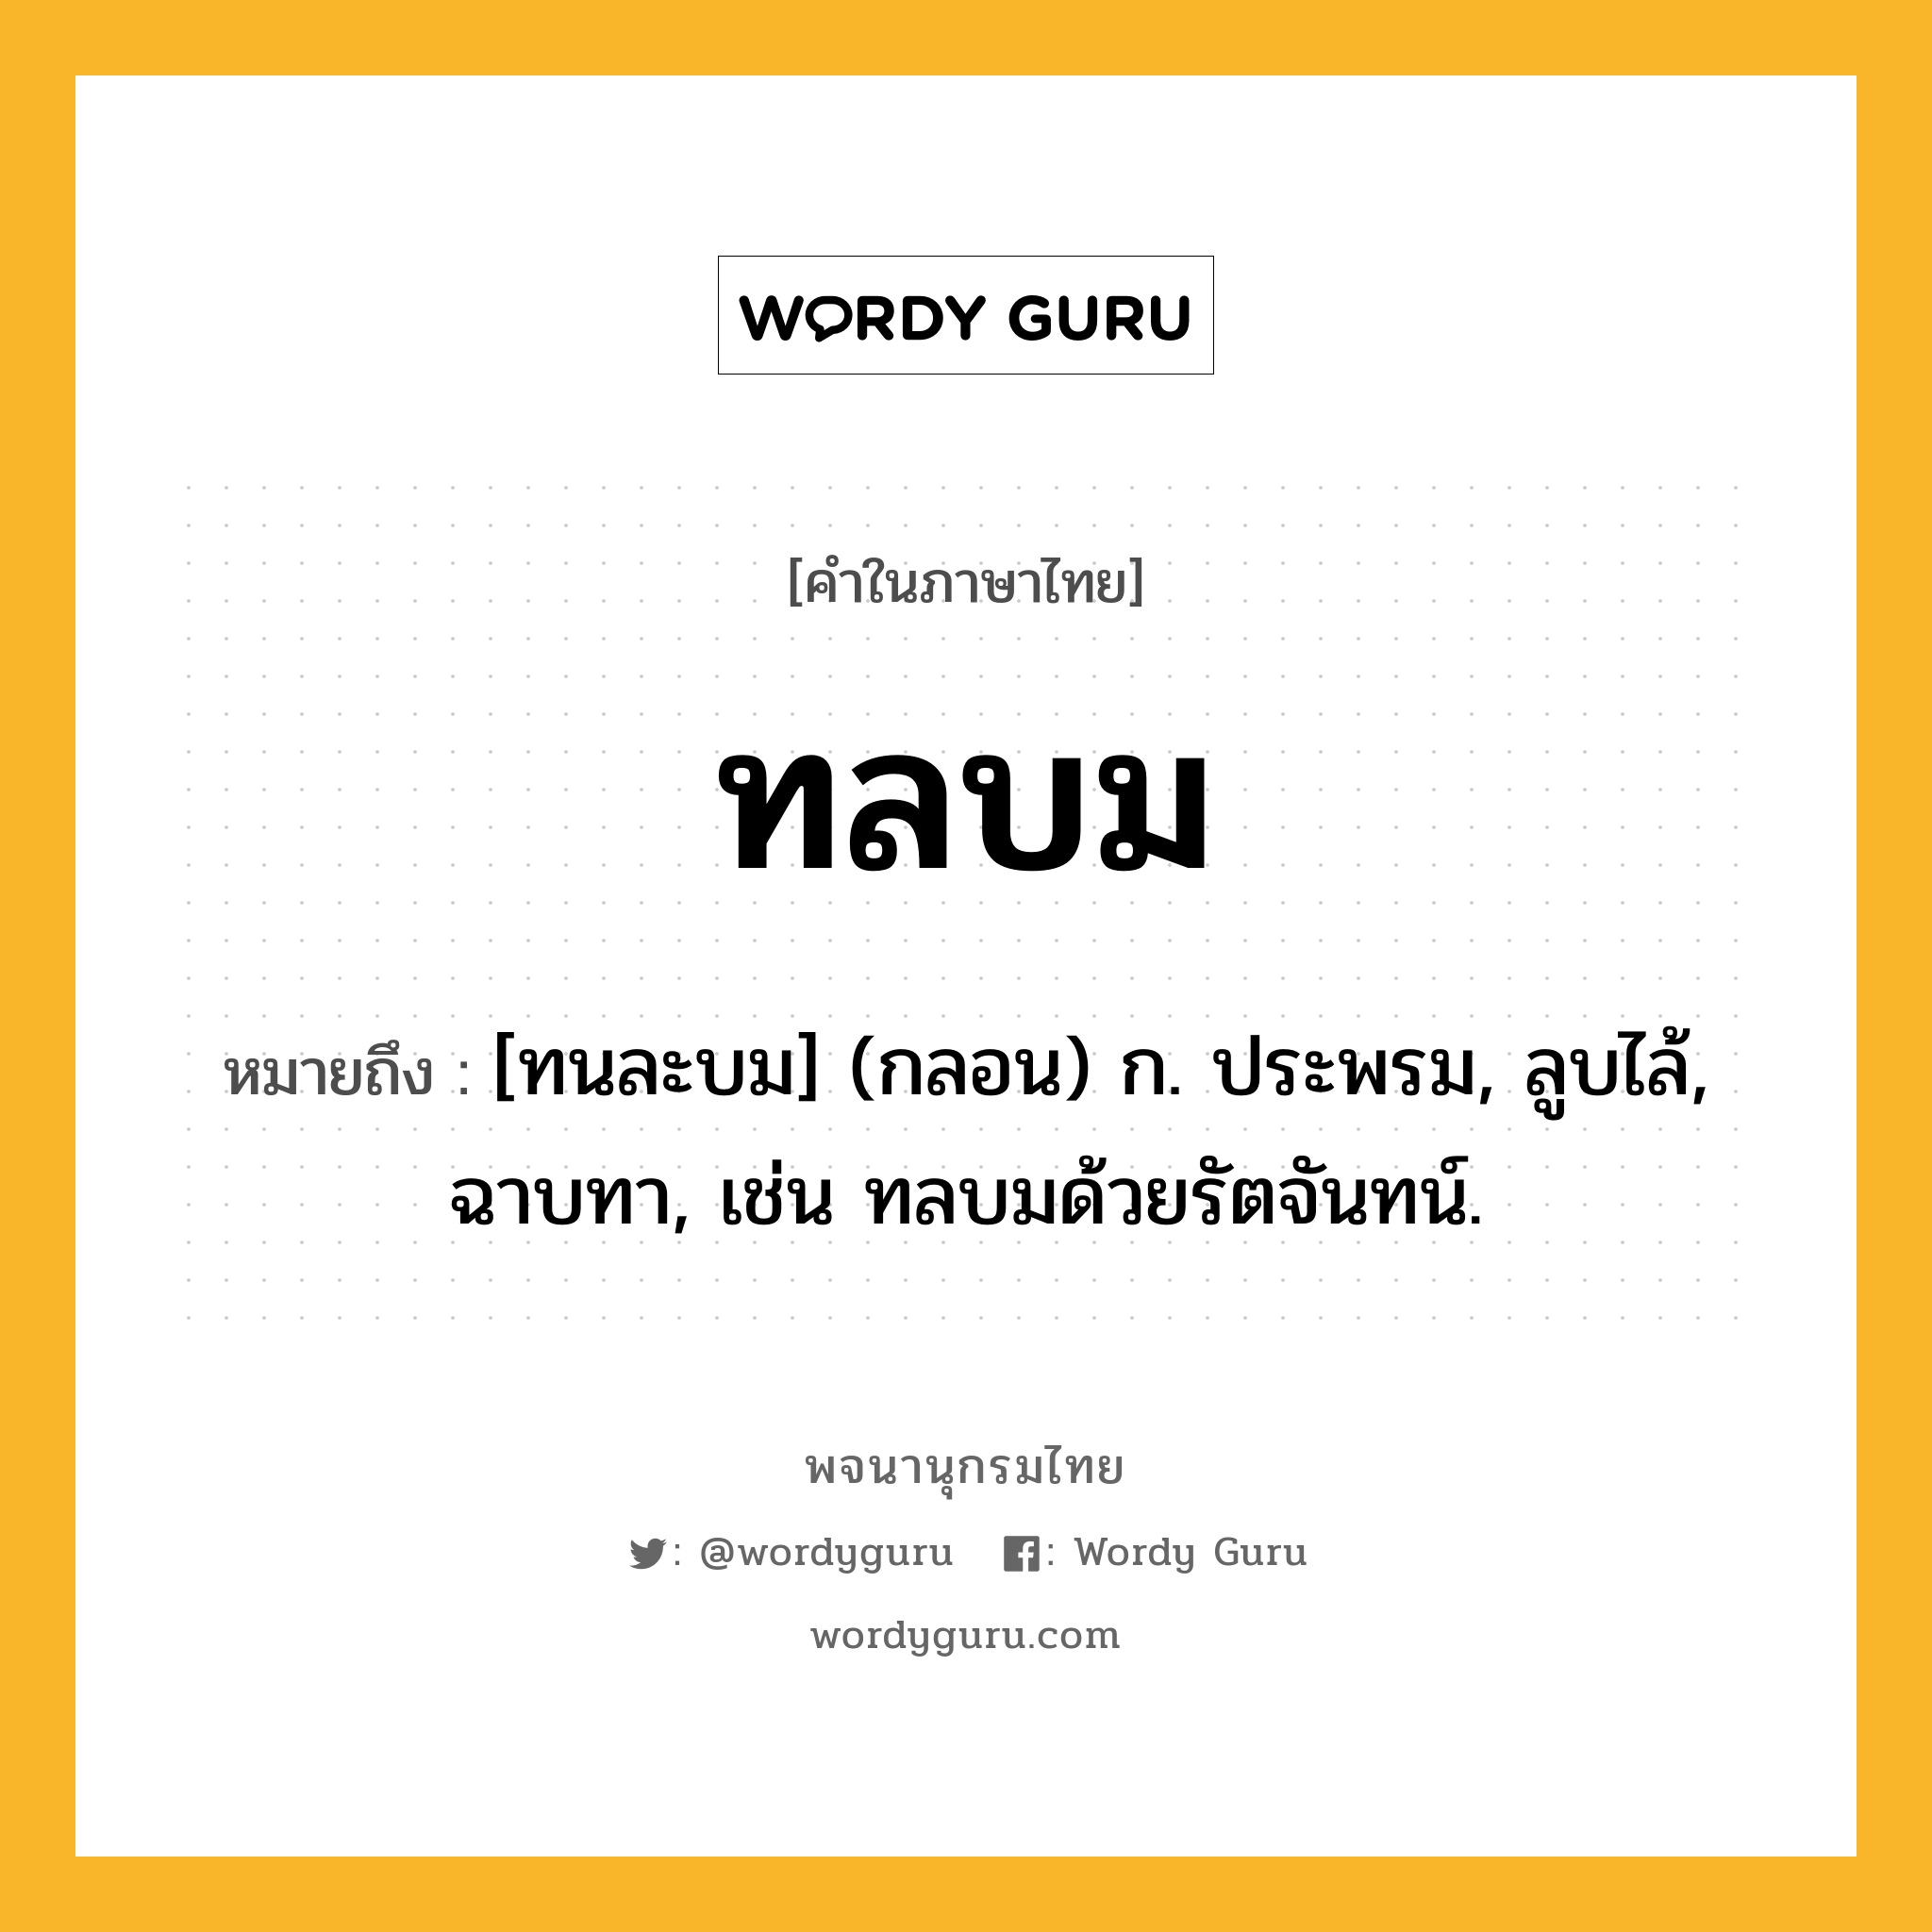 ทลบม ความหมาย หมายถึงอะไร?, คำในภาษาไทย ทลบม หมายถึง [ทนละบม] (กลอน) ก. ประพรม, ลูบไล้, ฉาบทา, เช่น ทลบมด้วยรัตจันทน์.